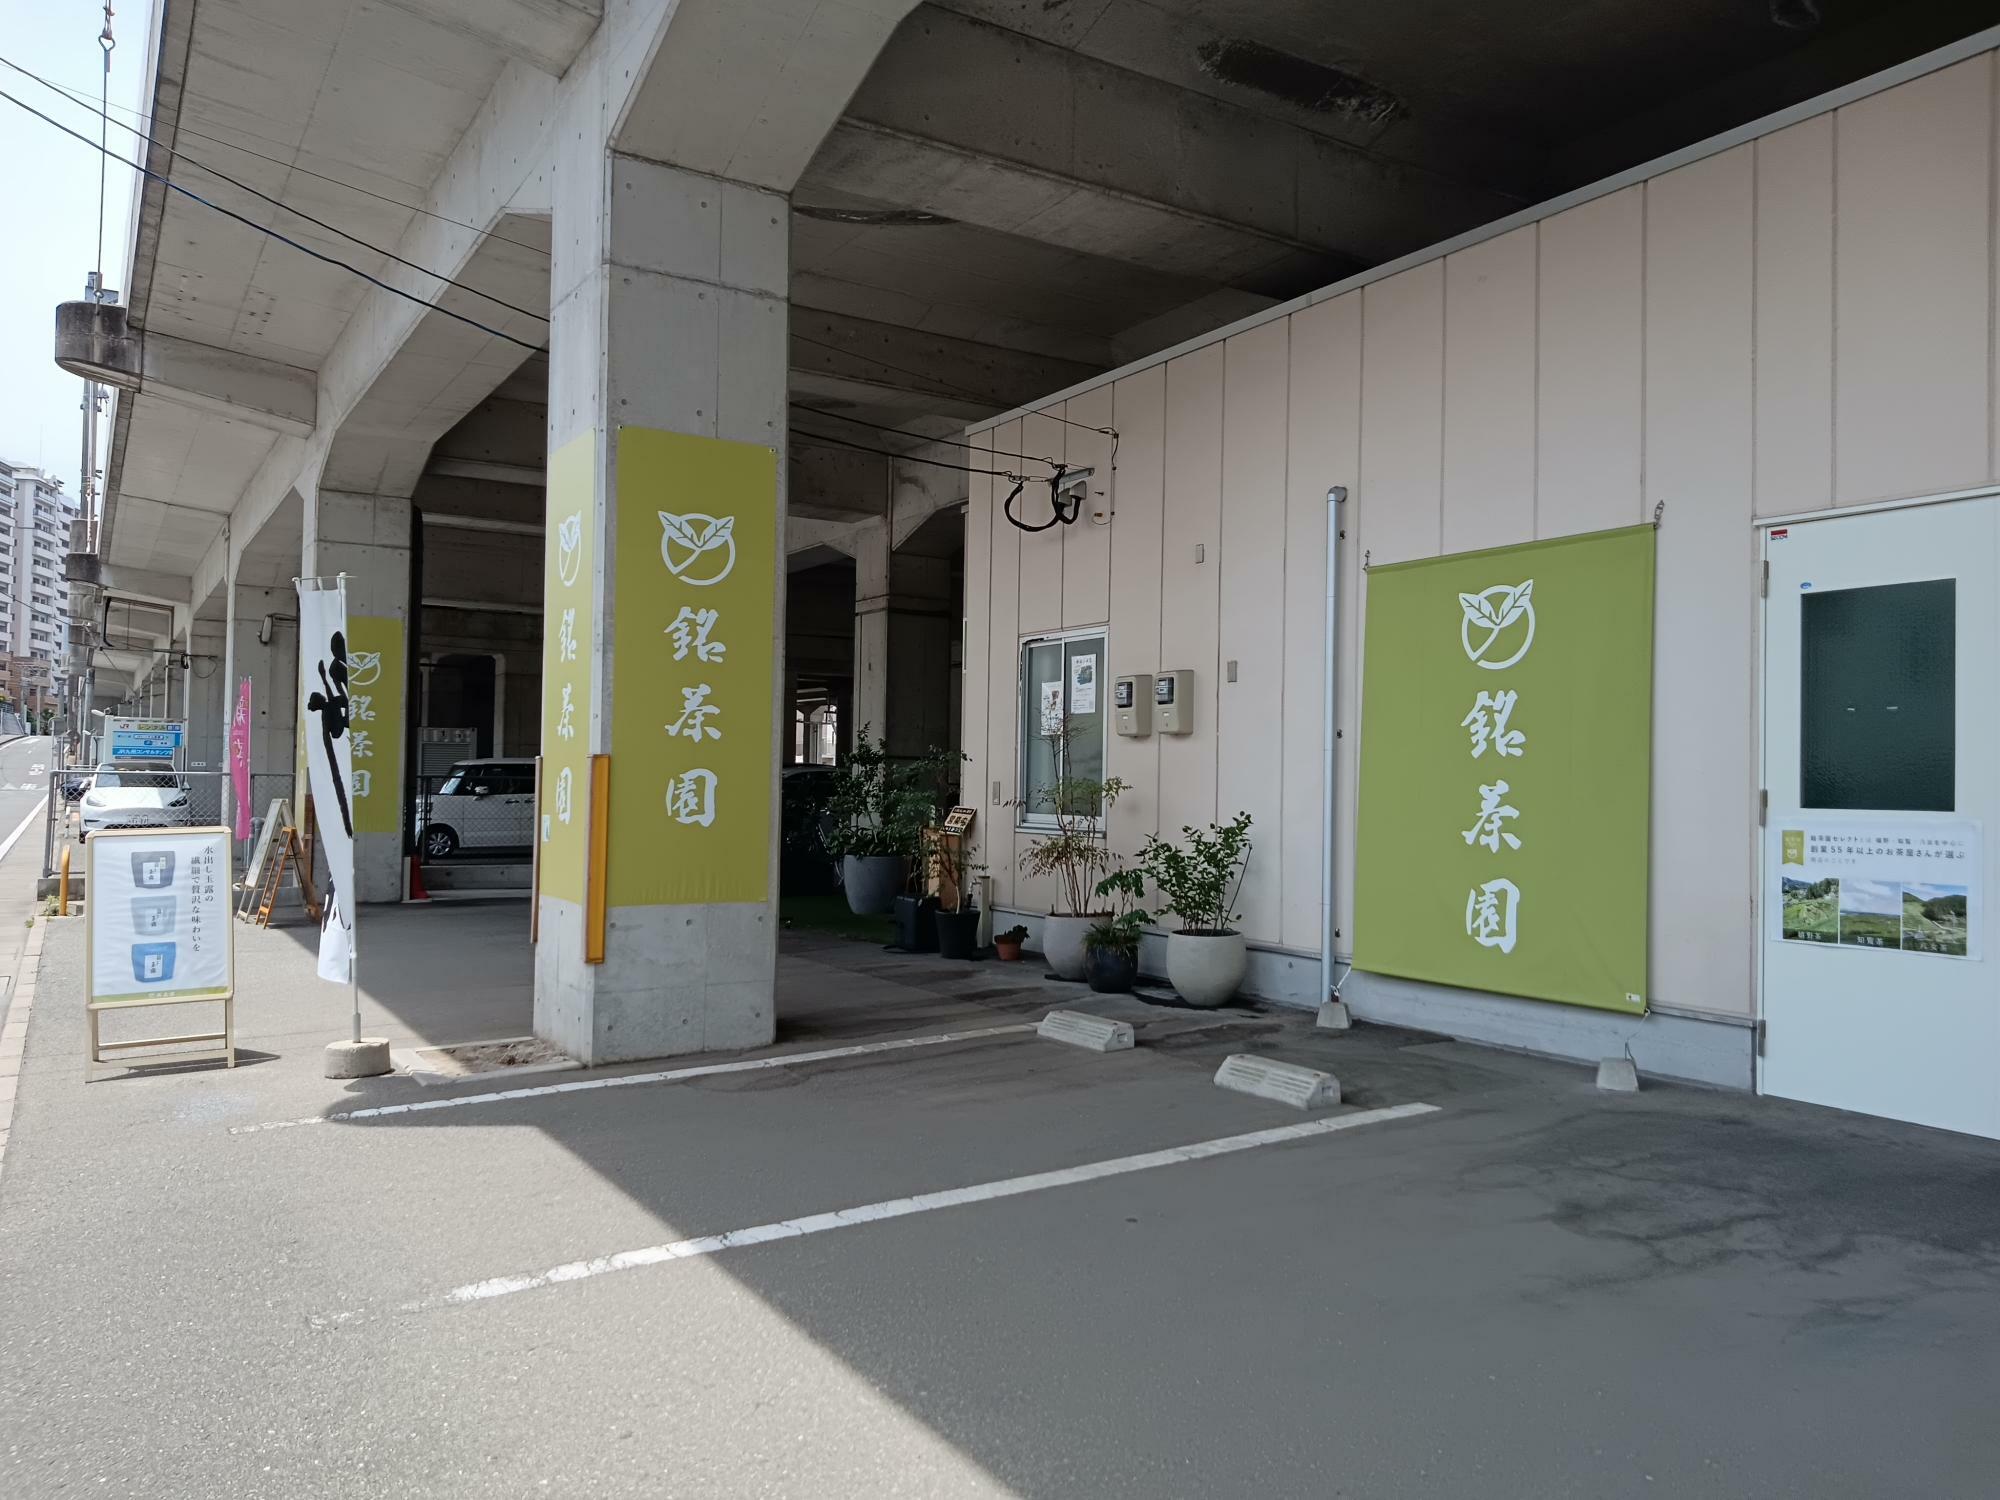 「銘茶園千早店」は、JR高架下「トヨタレンタカー千早駅前店」近くにあり、駐車場が4台程度あります。